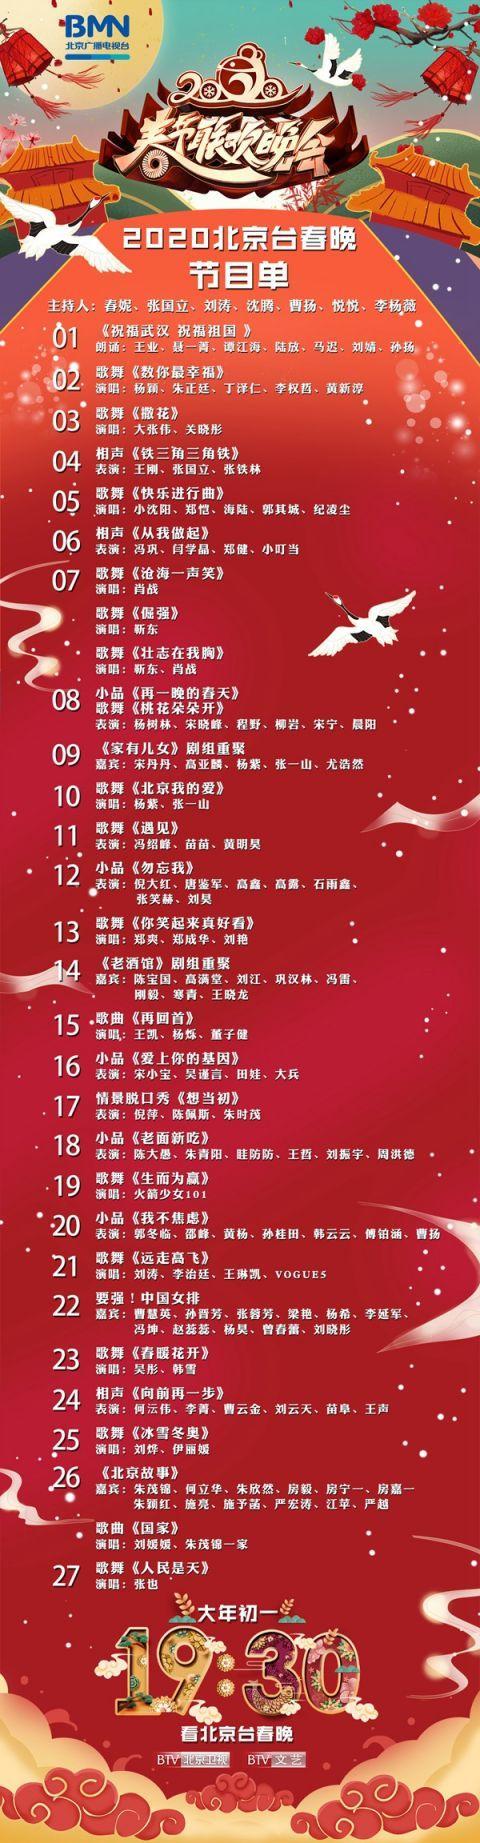 北京台春晚公布节目单 临时增加“祝福武汉”节目(图1)